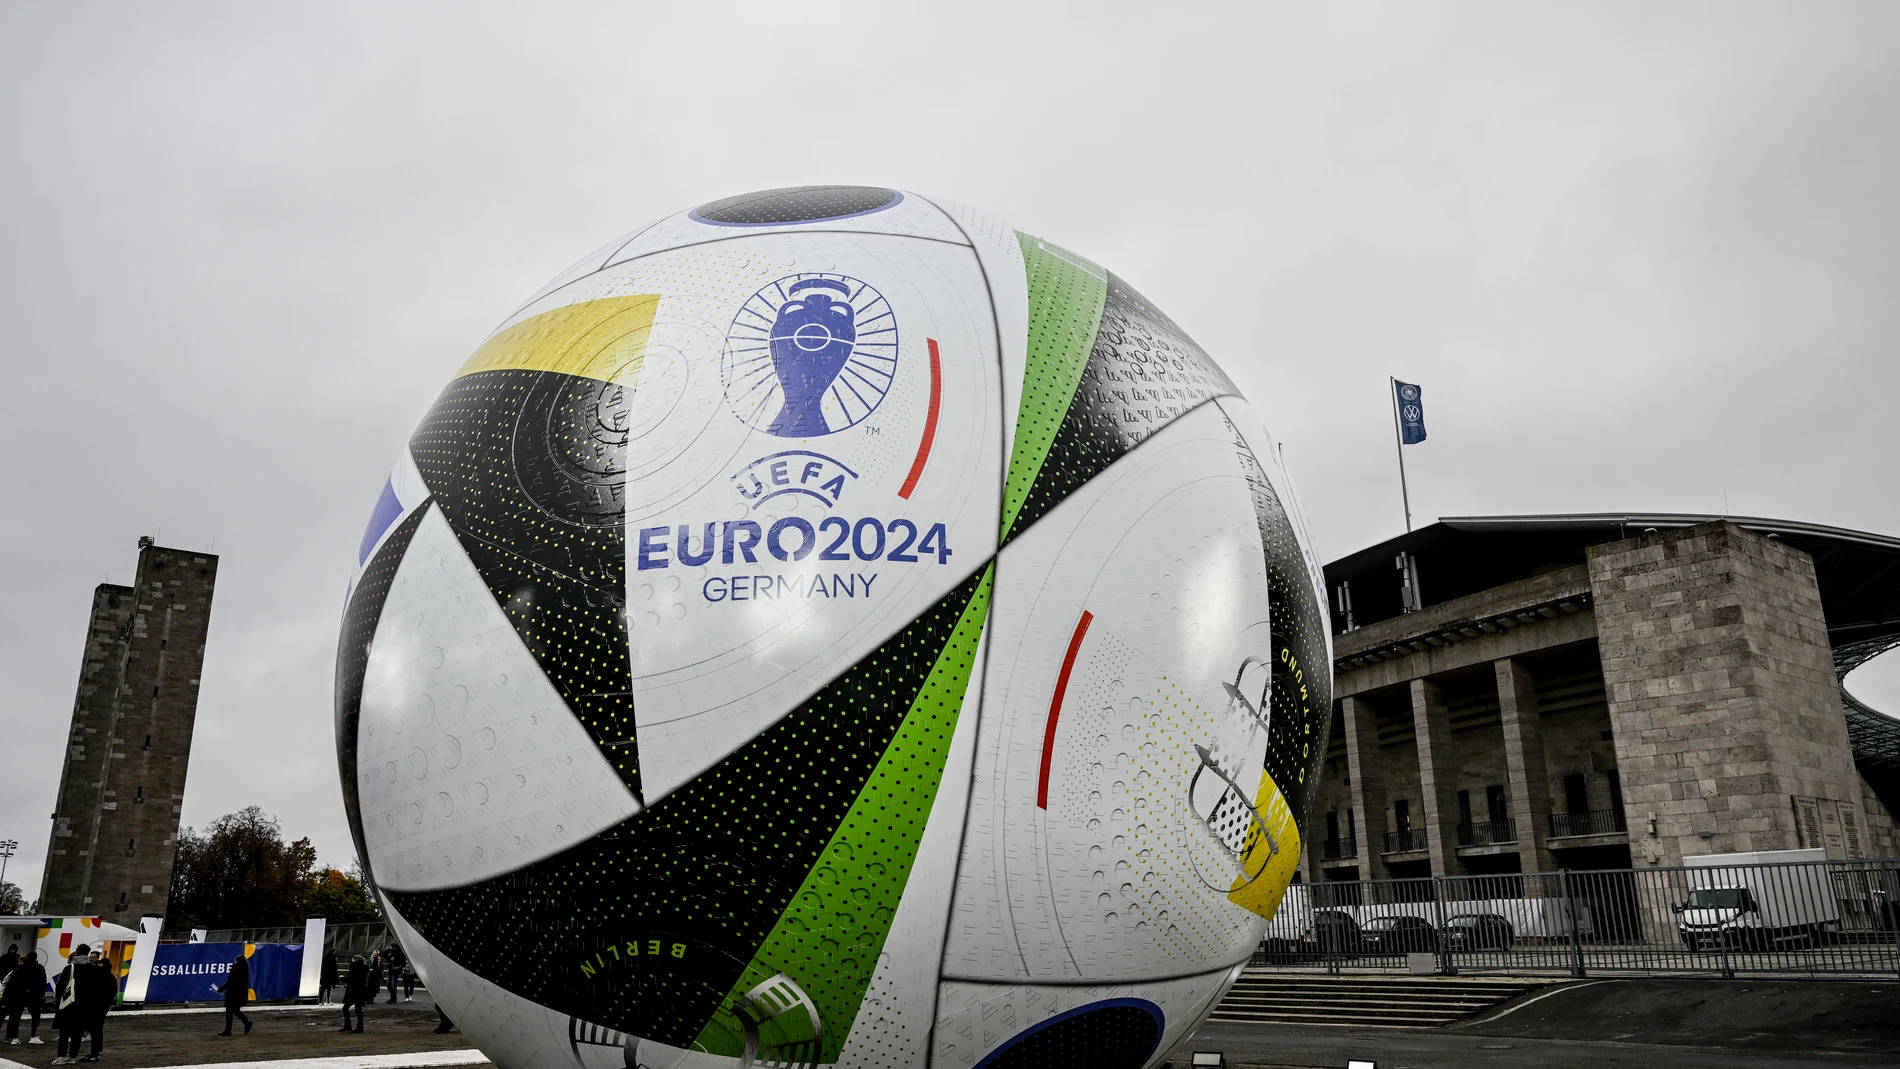 Imagen de un balón gigante publicitando la Eurocopa 2024 en Alemania